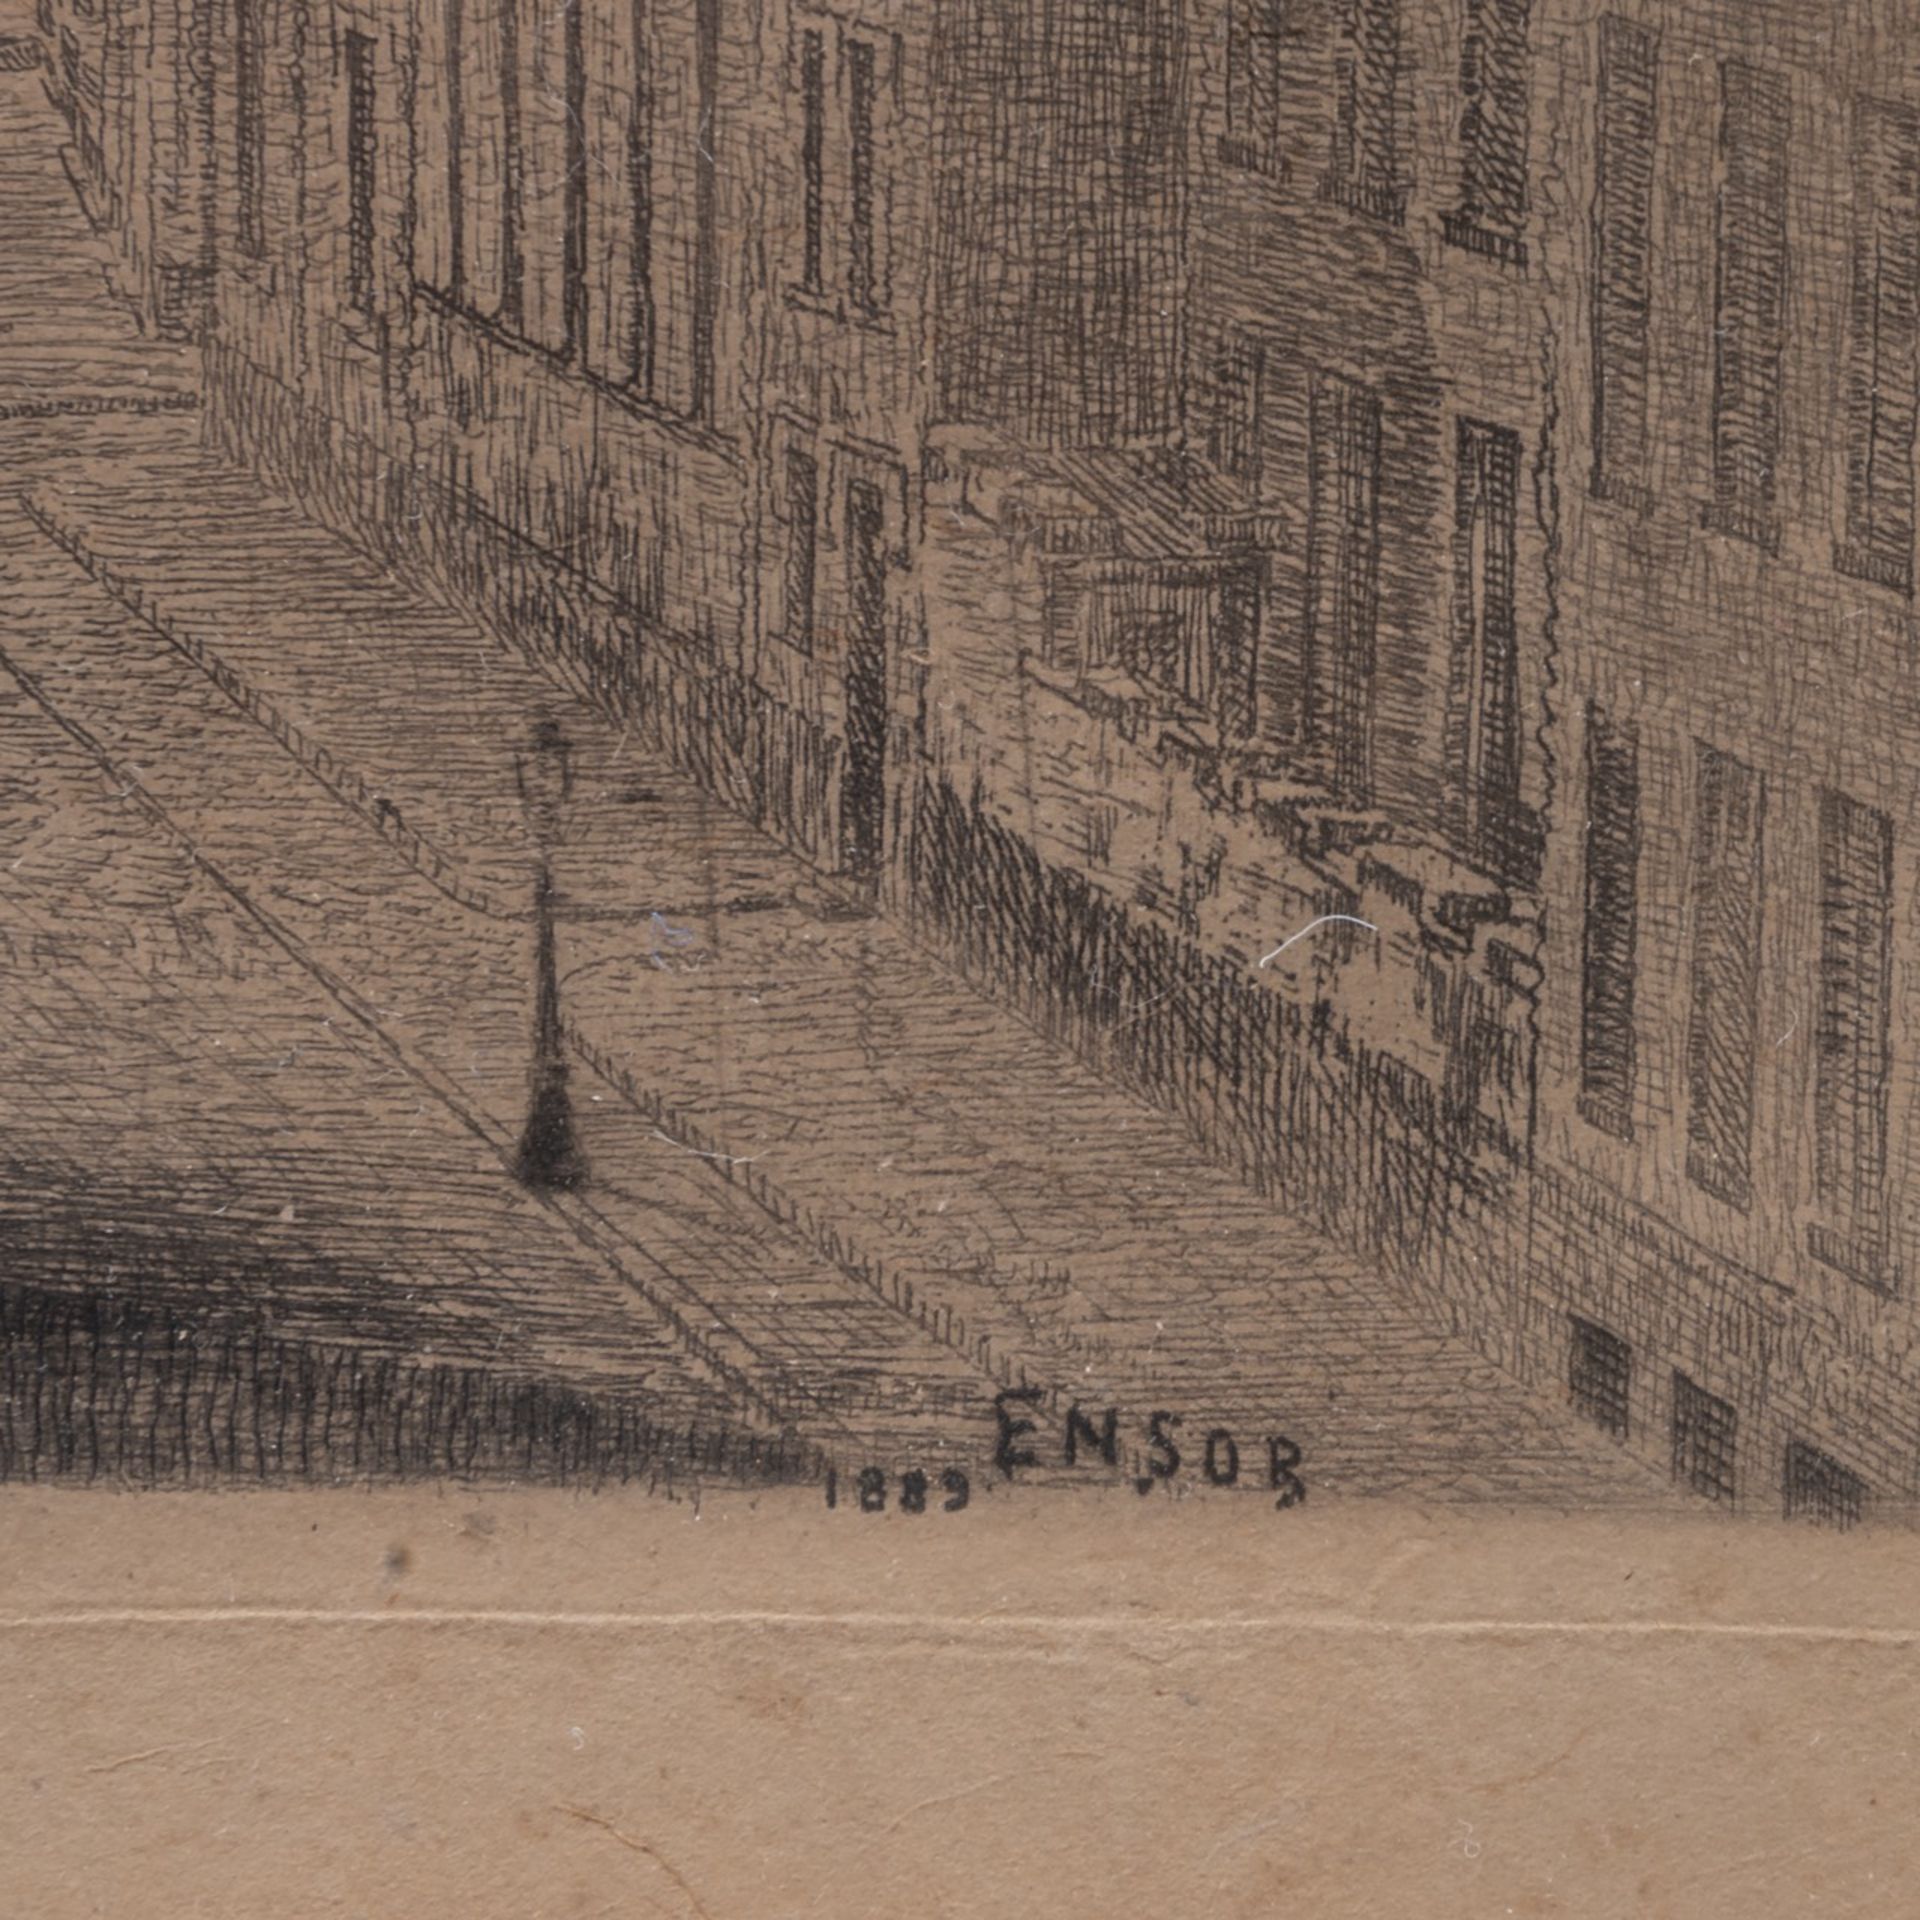 James Ensor (1860-1949), 'Van Iseghem Boulevard te Oostende' (1889), etching and drypoint on simili - Image 4 of 5